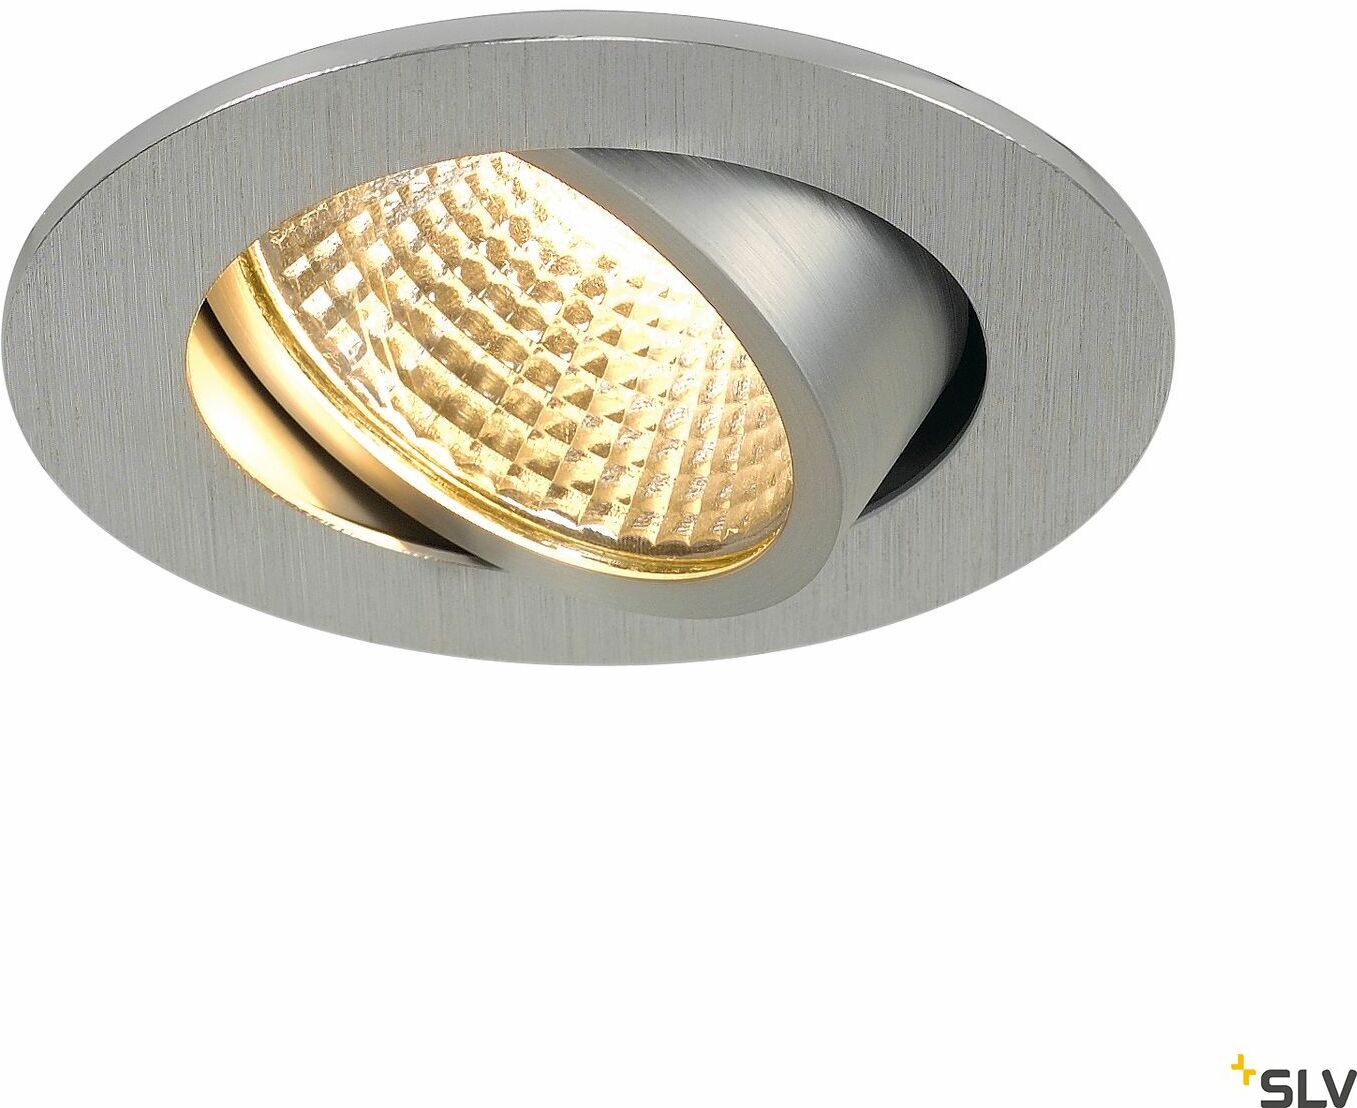 NEW TRIA 68 I CS lampa sufitowa wpuszczana LED,, aluminium, okrągła, 2700K, 38 , z zasilaczem i sprężynami zaciskowymi